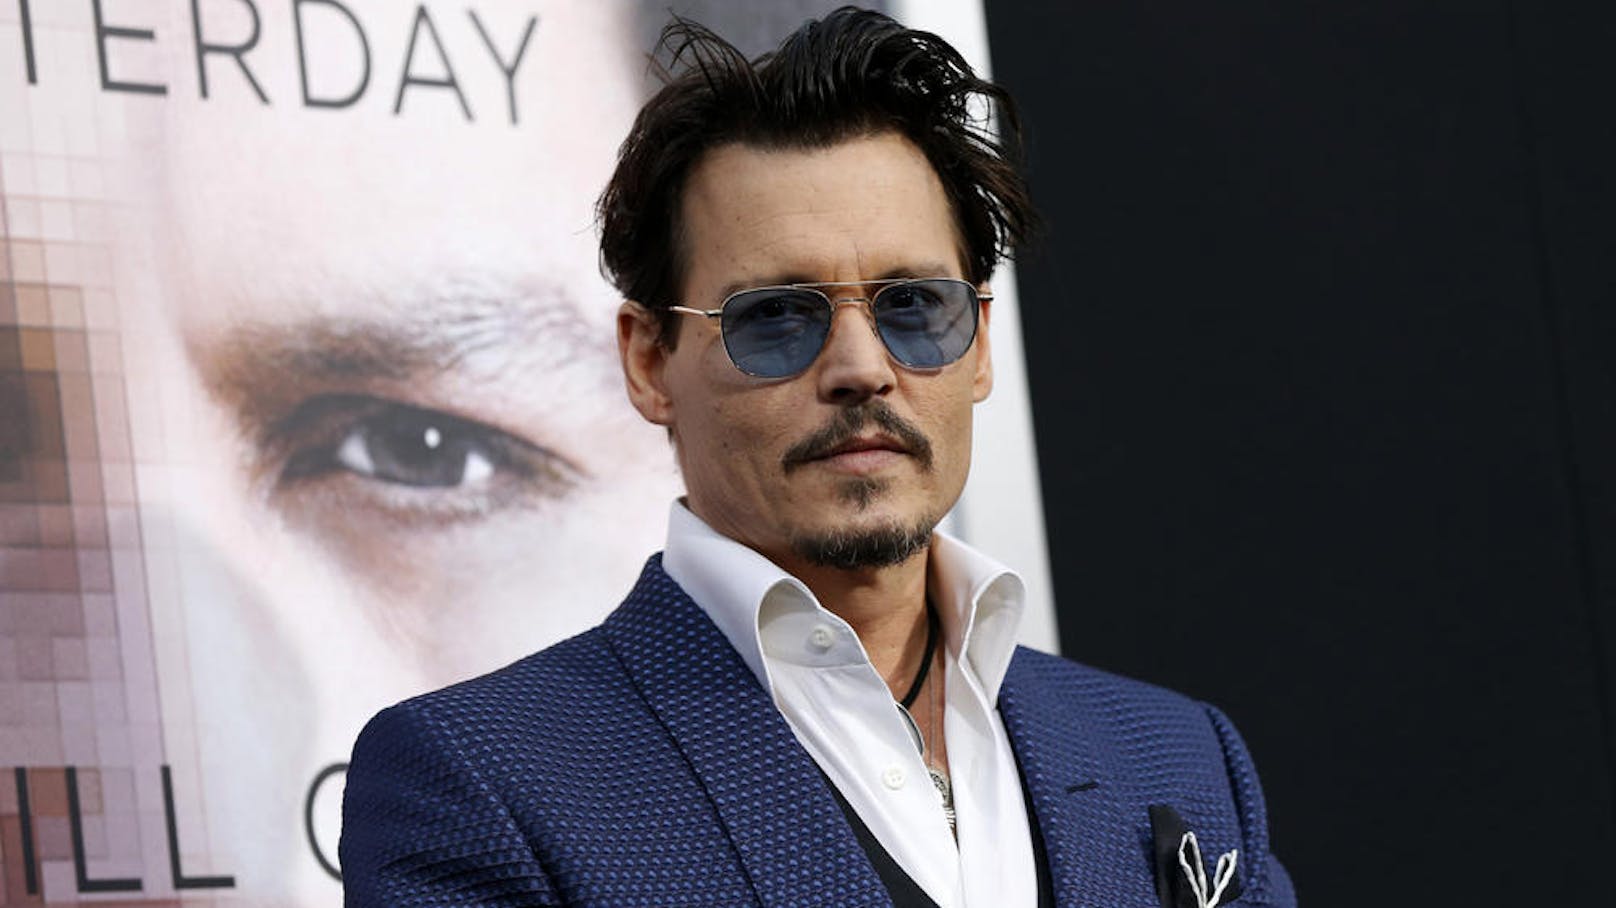 Auf seine Fans ist Verlass: Die Anhänger von <strong>Johnny Depp</strong> wollen ihr Idol auch weiterhin als bösen Zauberer auf der Leinwand sehen.